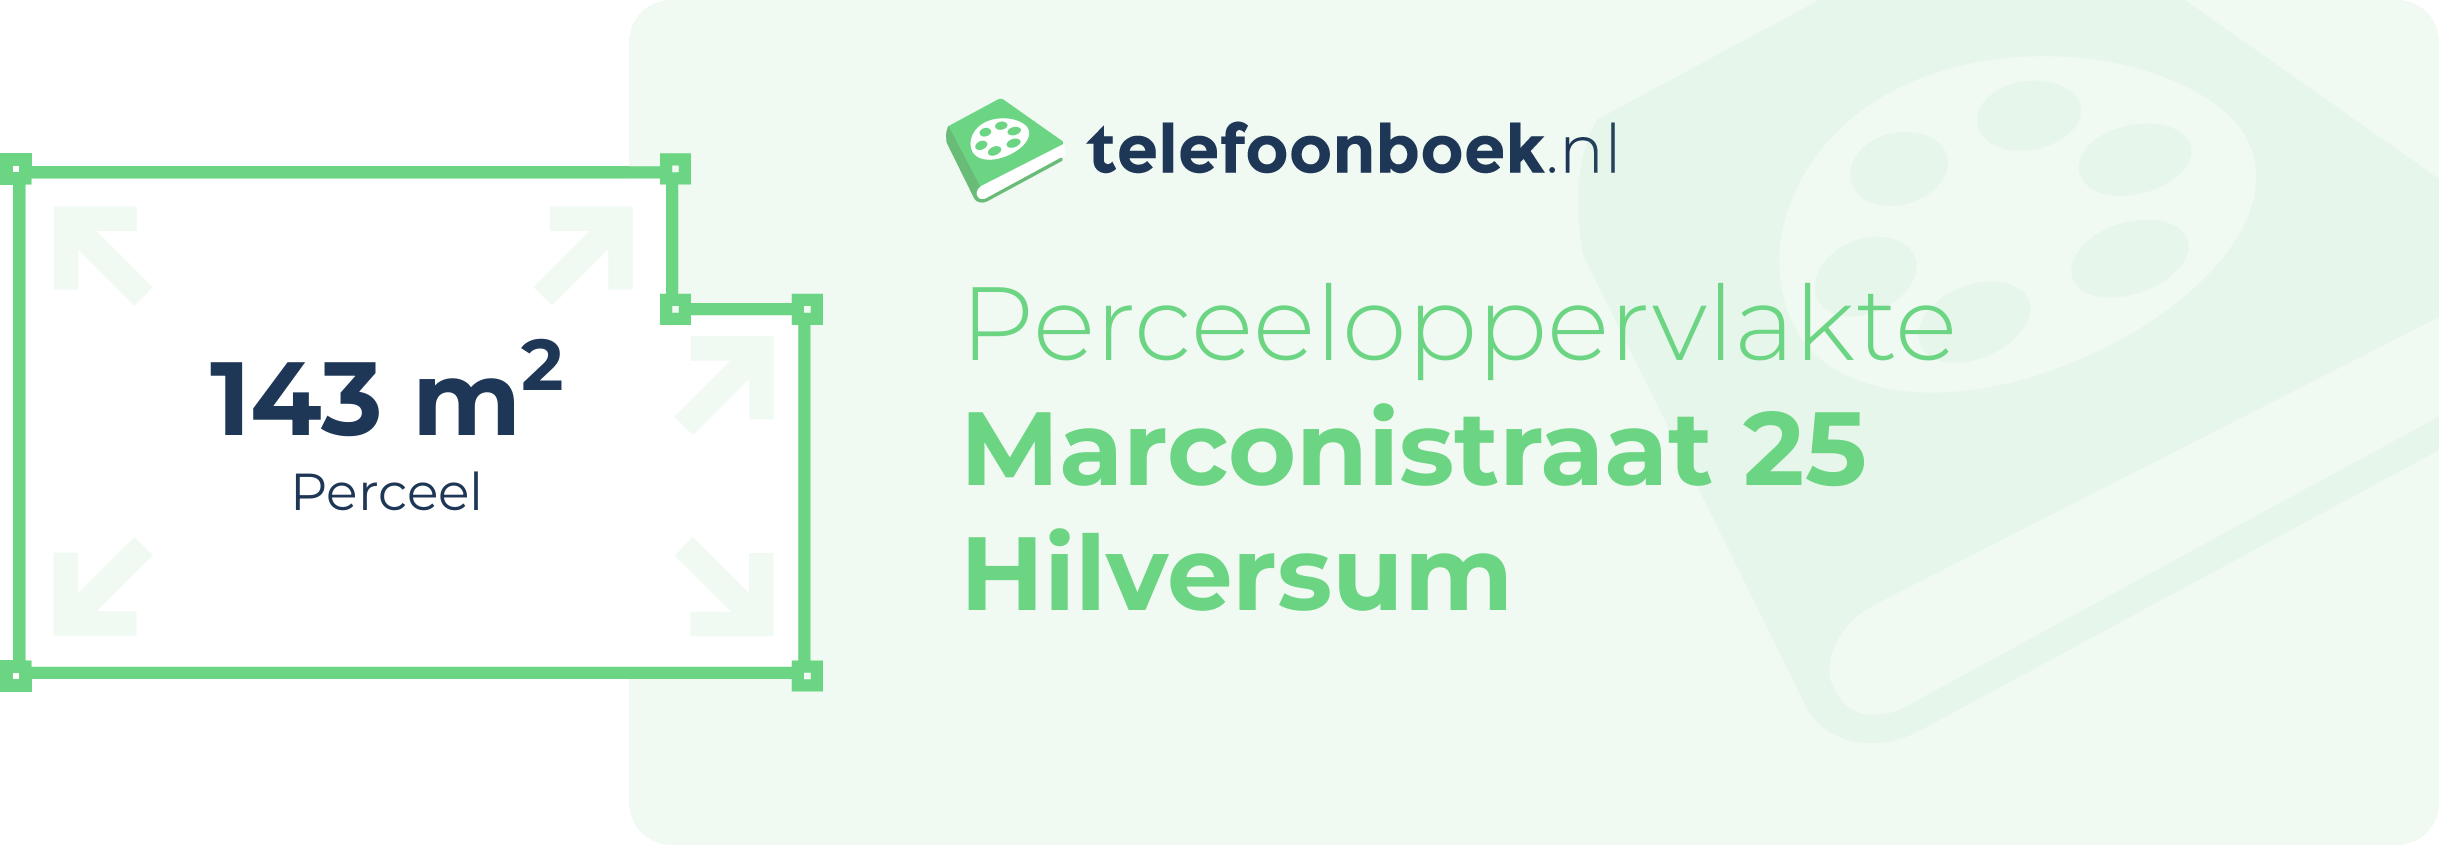 Perceeloppervlakte Marconistraat 25 Hilversum